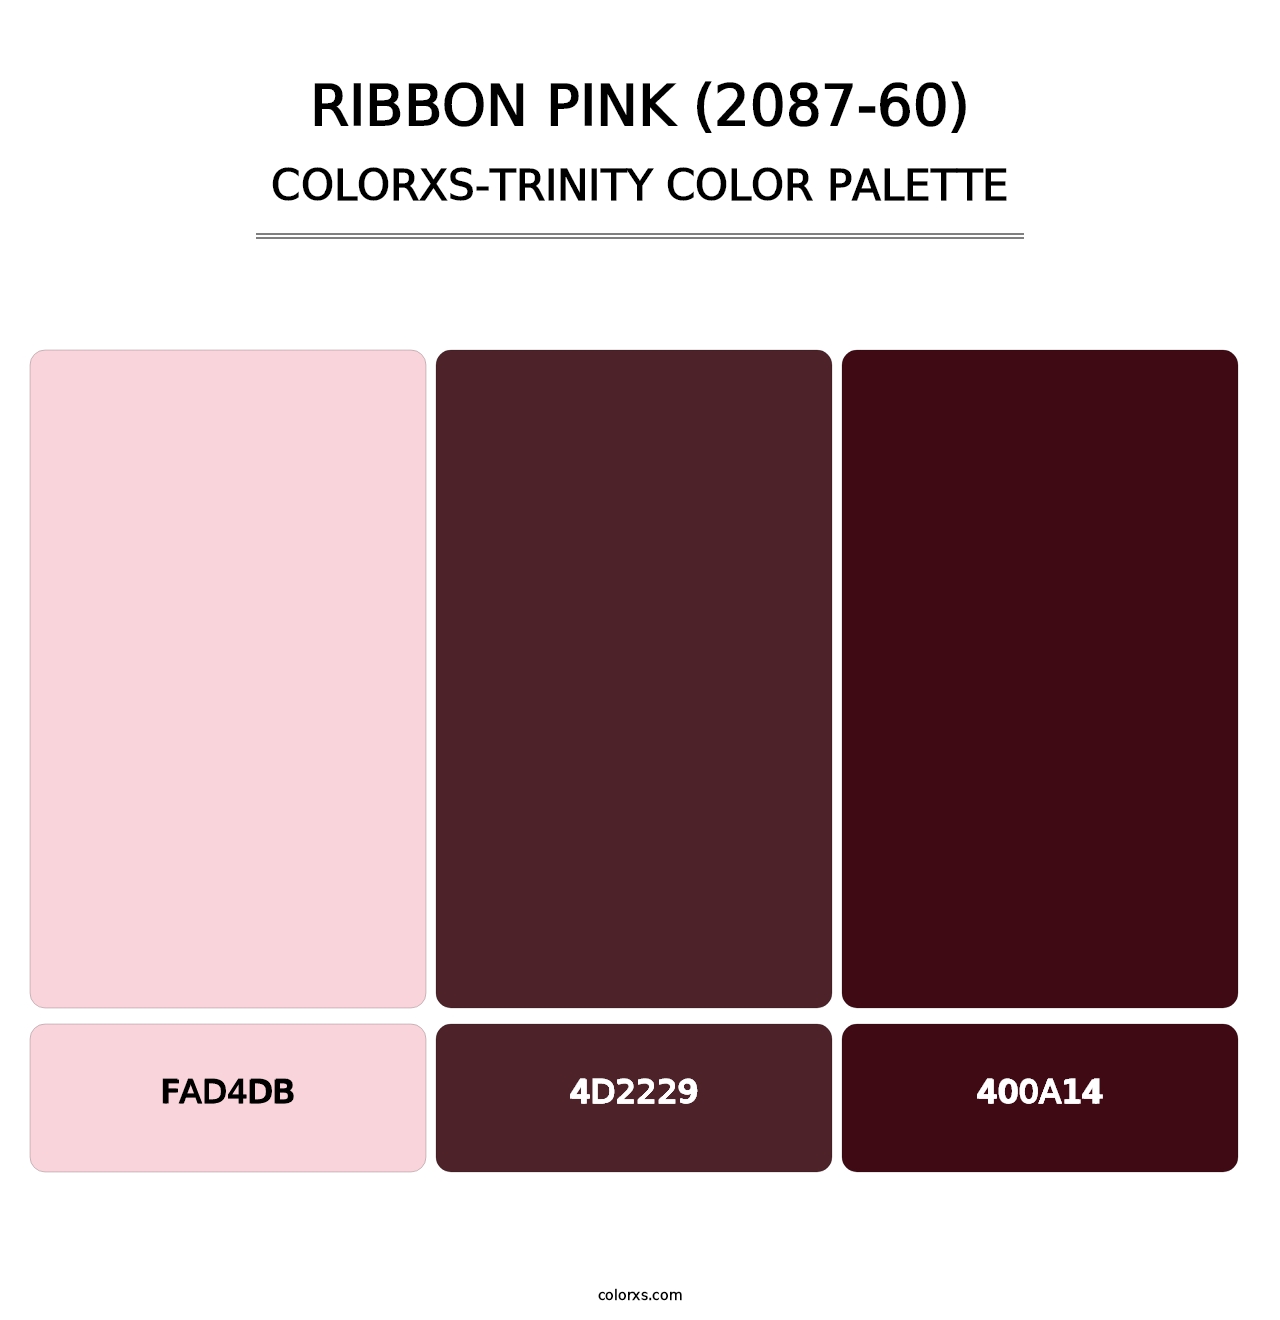 Ribbon Pink (2087-60) - Colorxs Trinity Palette